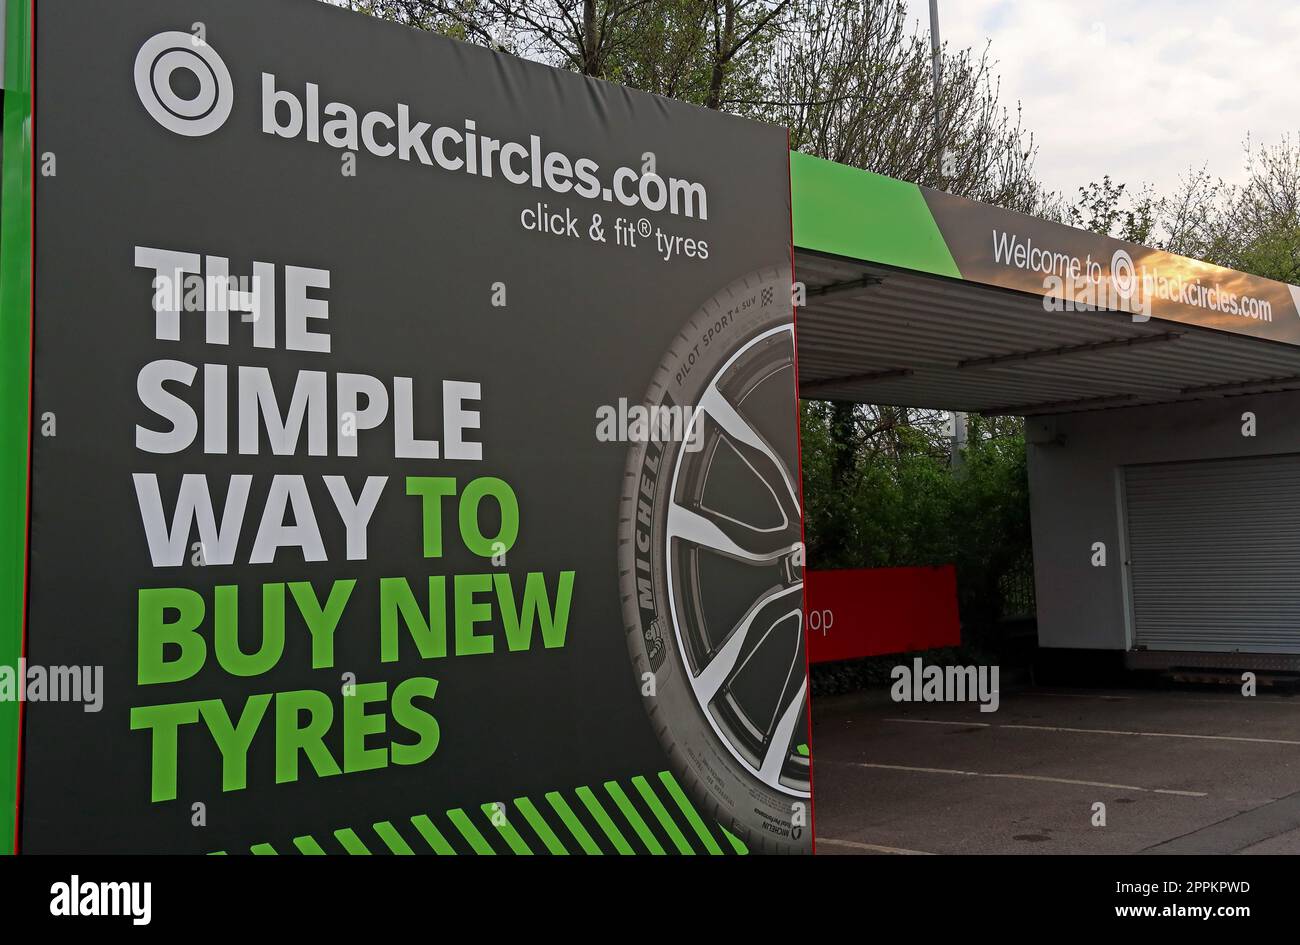 Cerchi neri - Blackcircles.com - il modo semplice per acquistare pneumatici nuovi - al supermercato Morrisons, Greenall's Ave, Warrington, Cheshire, UK, WA4 6RN Foto Stock